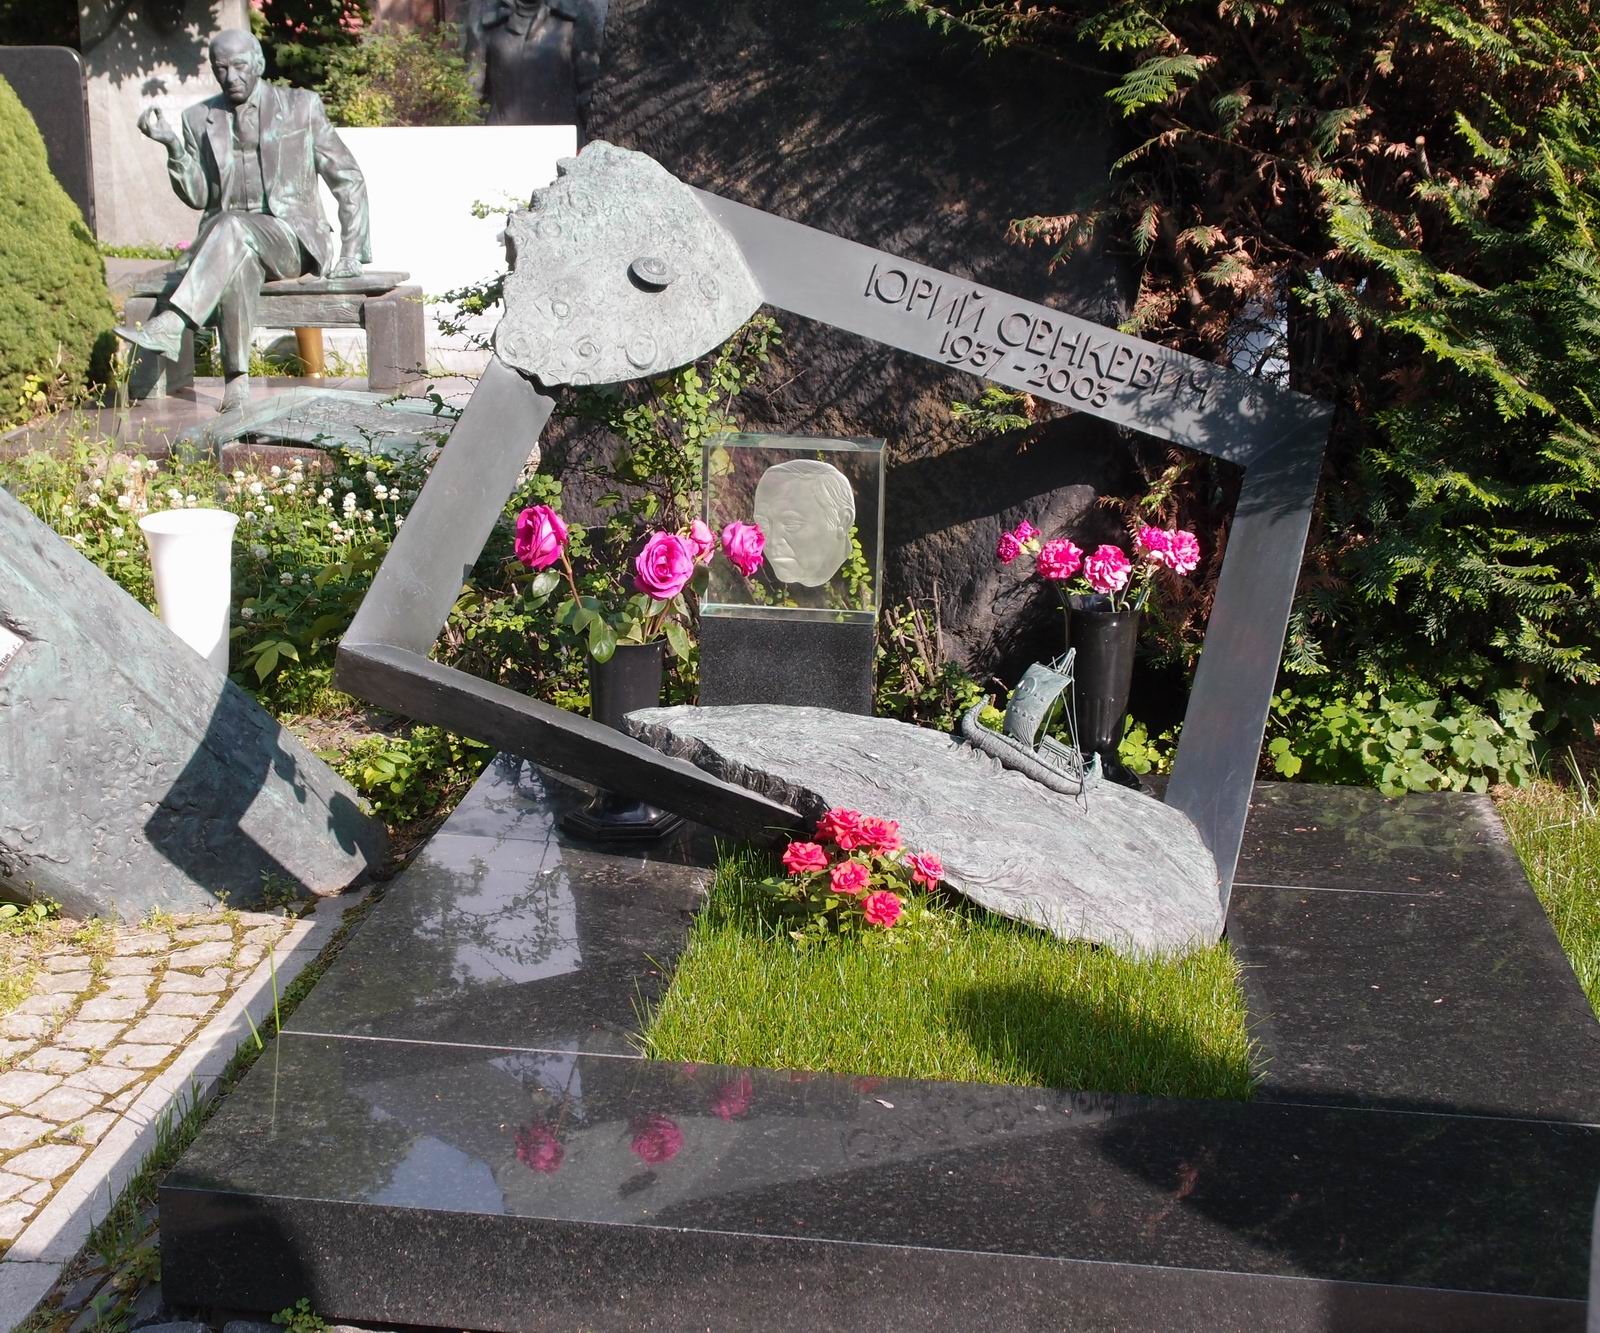 Памятник на могиле Сенкевича Ю.А. (1937-2003), ск. Ю.Чернов, арх. В.Бухаев, на Новодевичьем кладбище (10-8-17).